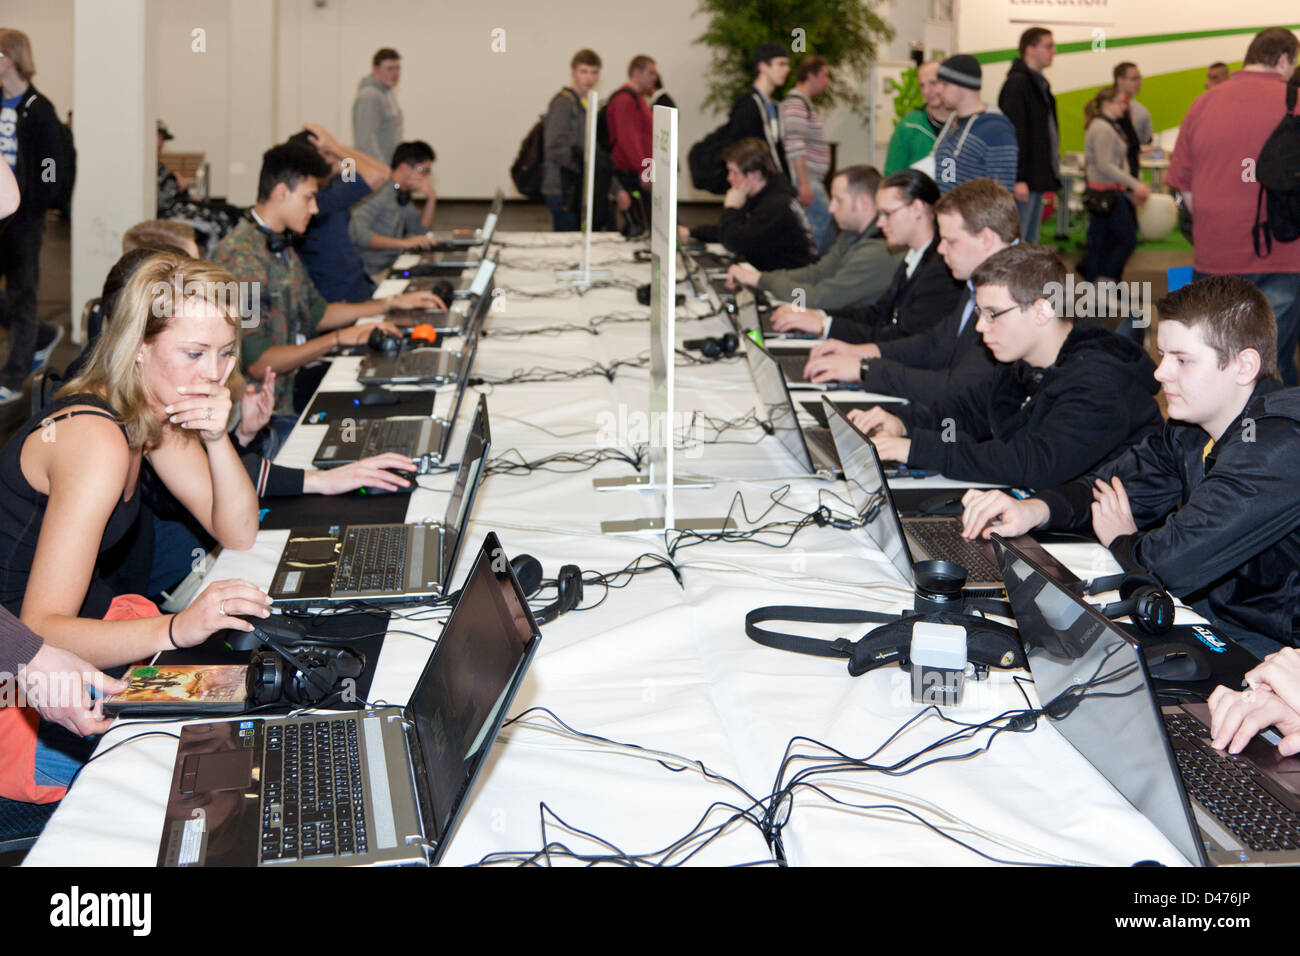 Junge Besucher der CeBIT 2013 Messe neue Computerspiele ausprobieren Stockfoto